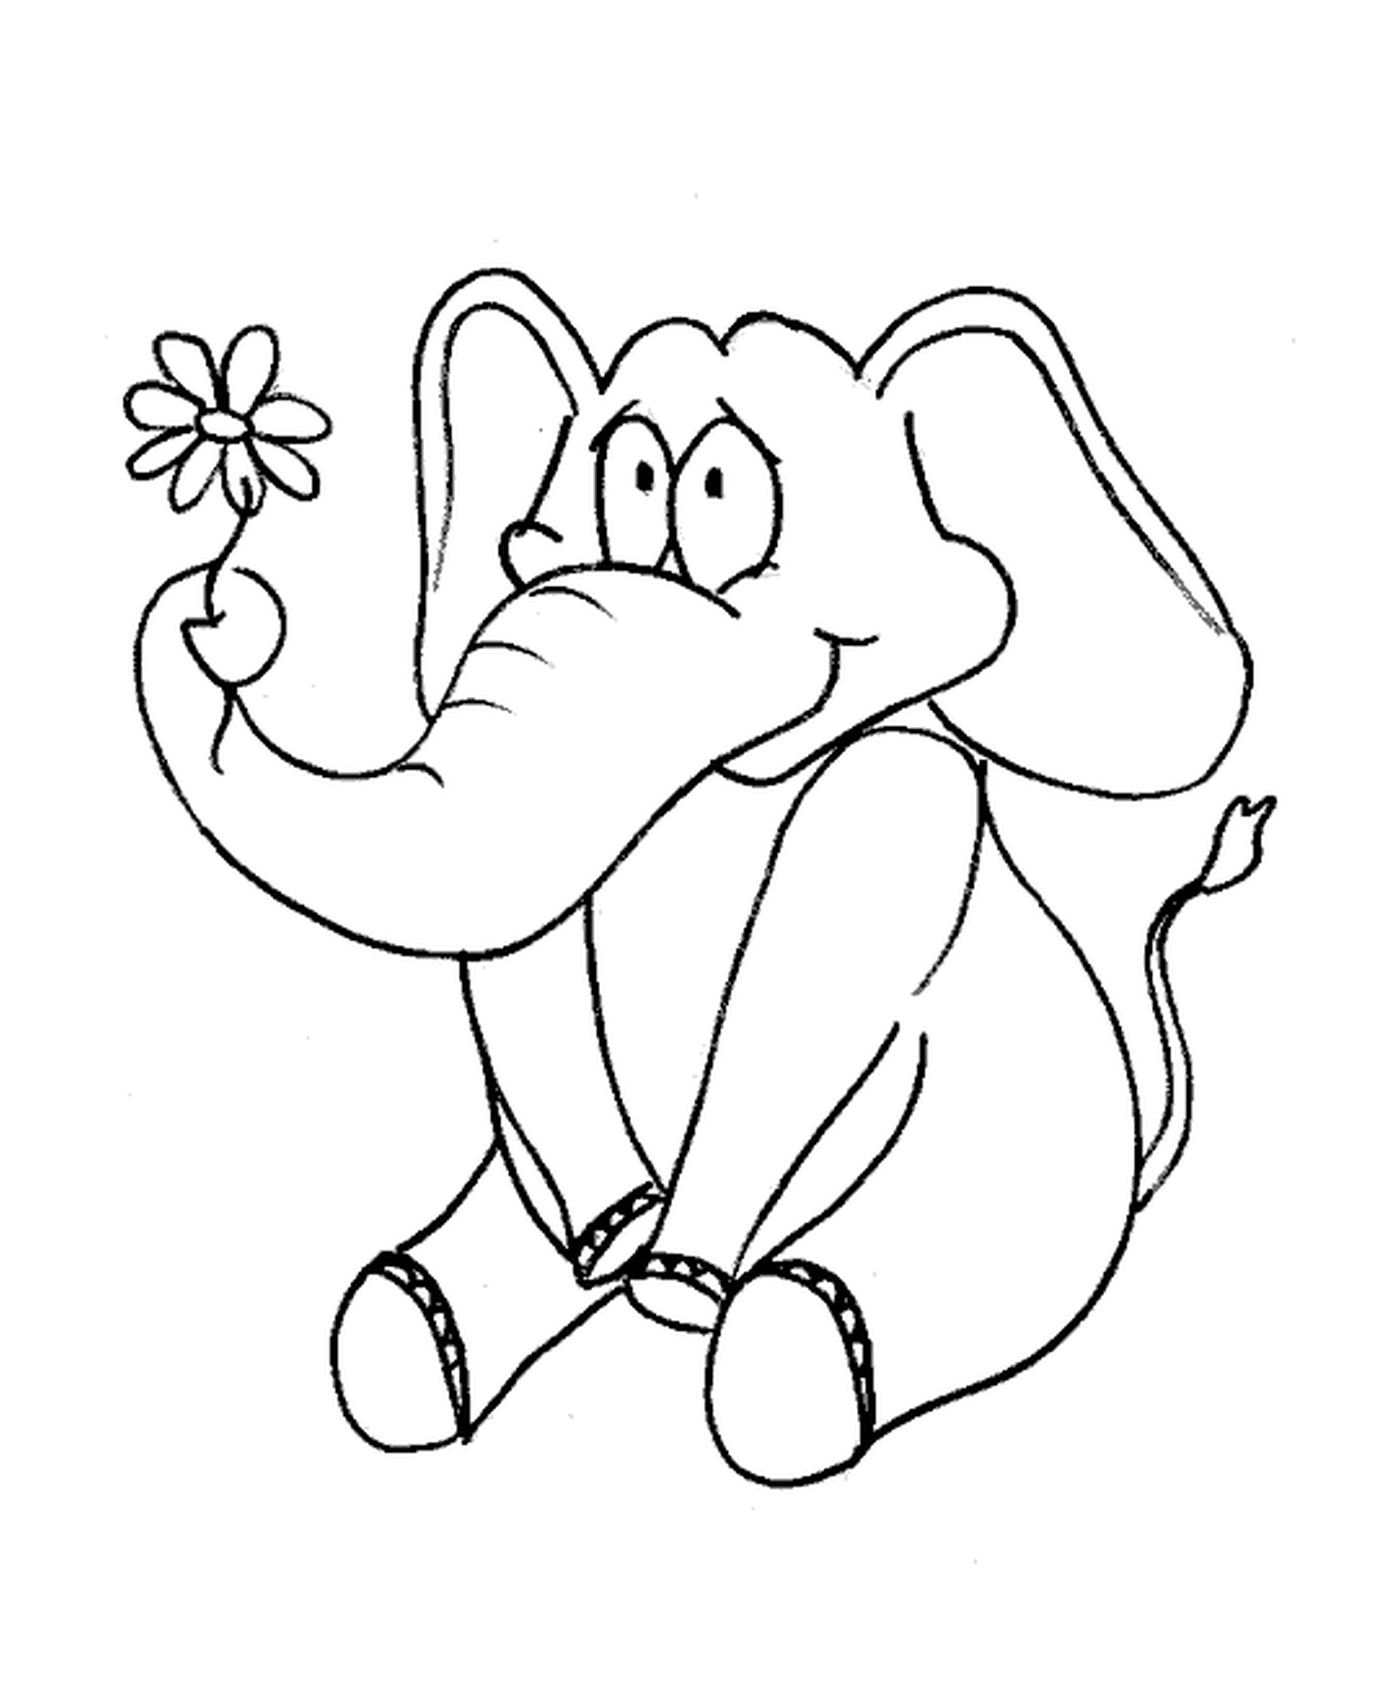  Un elefante sosteniendo una flor 